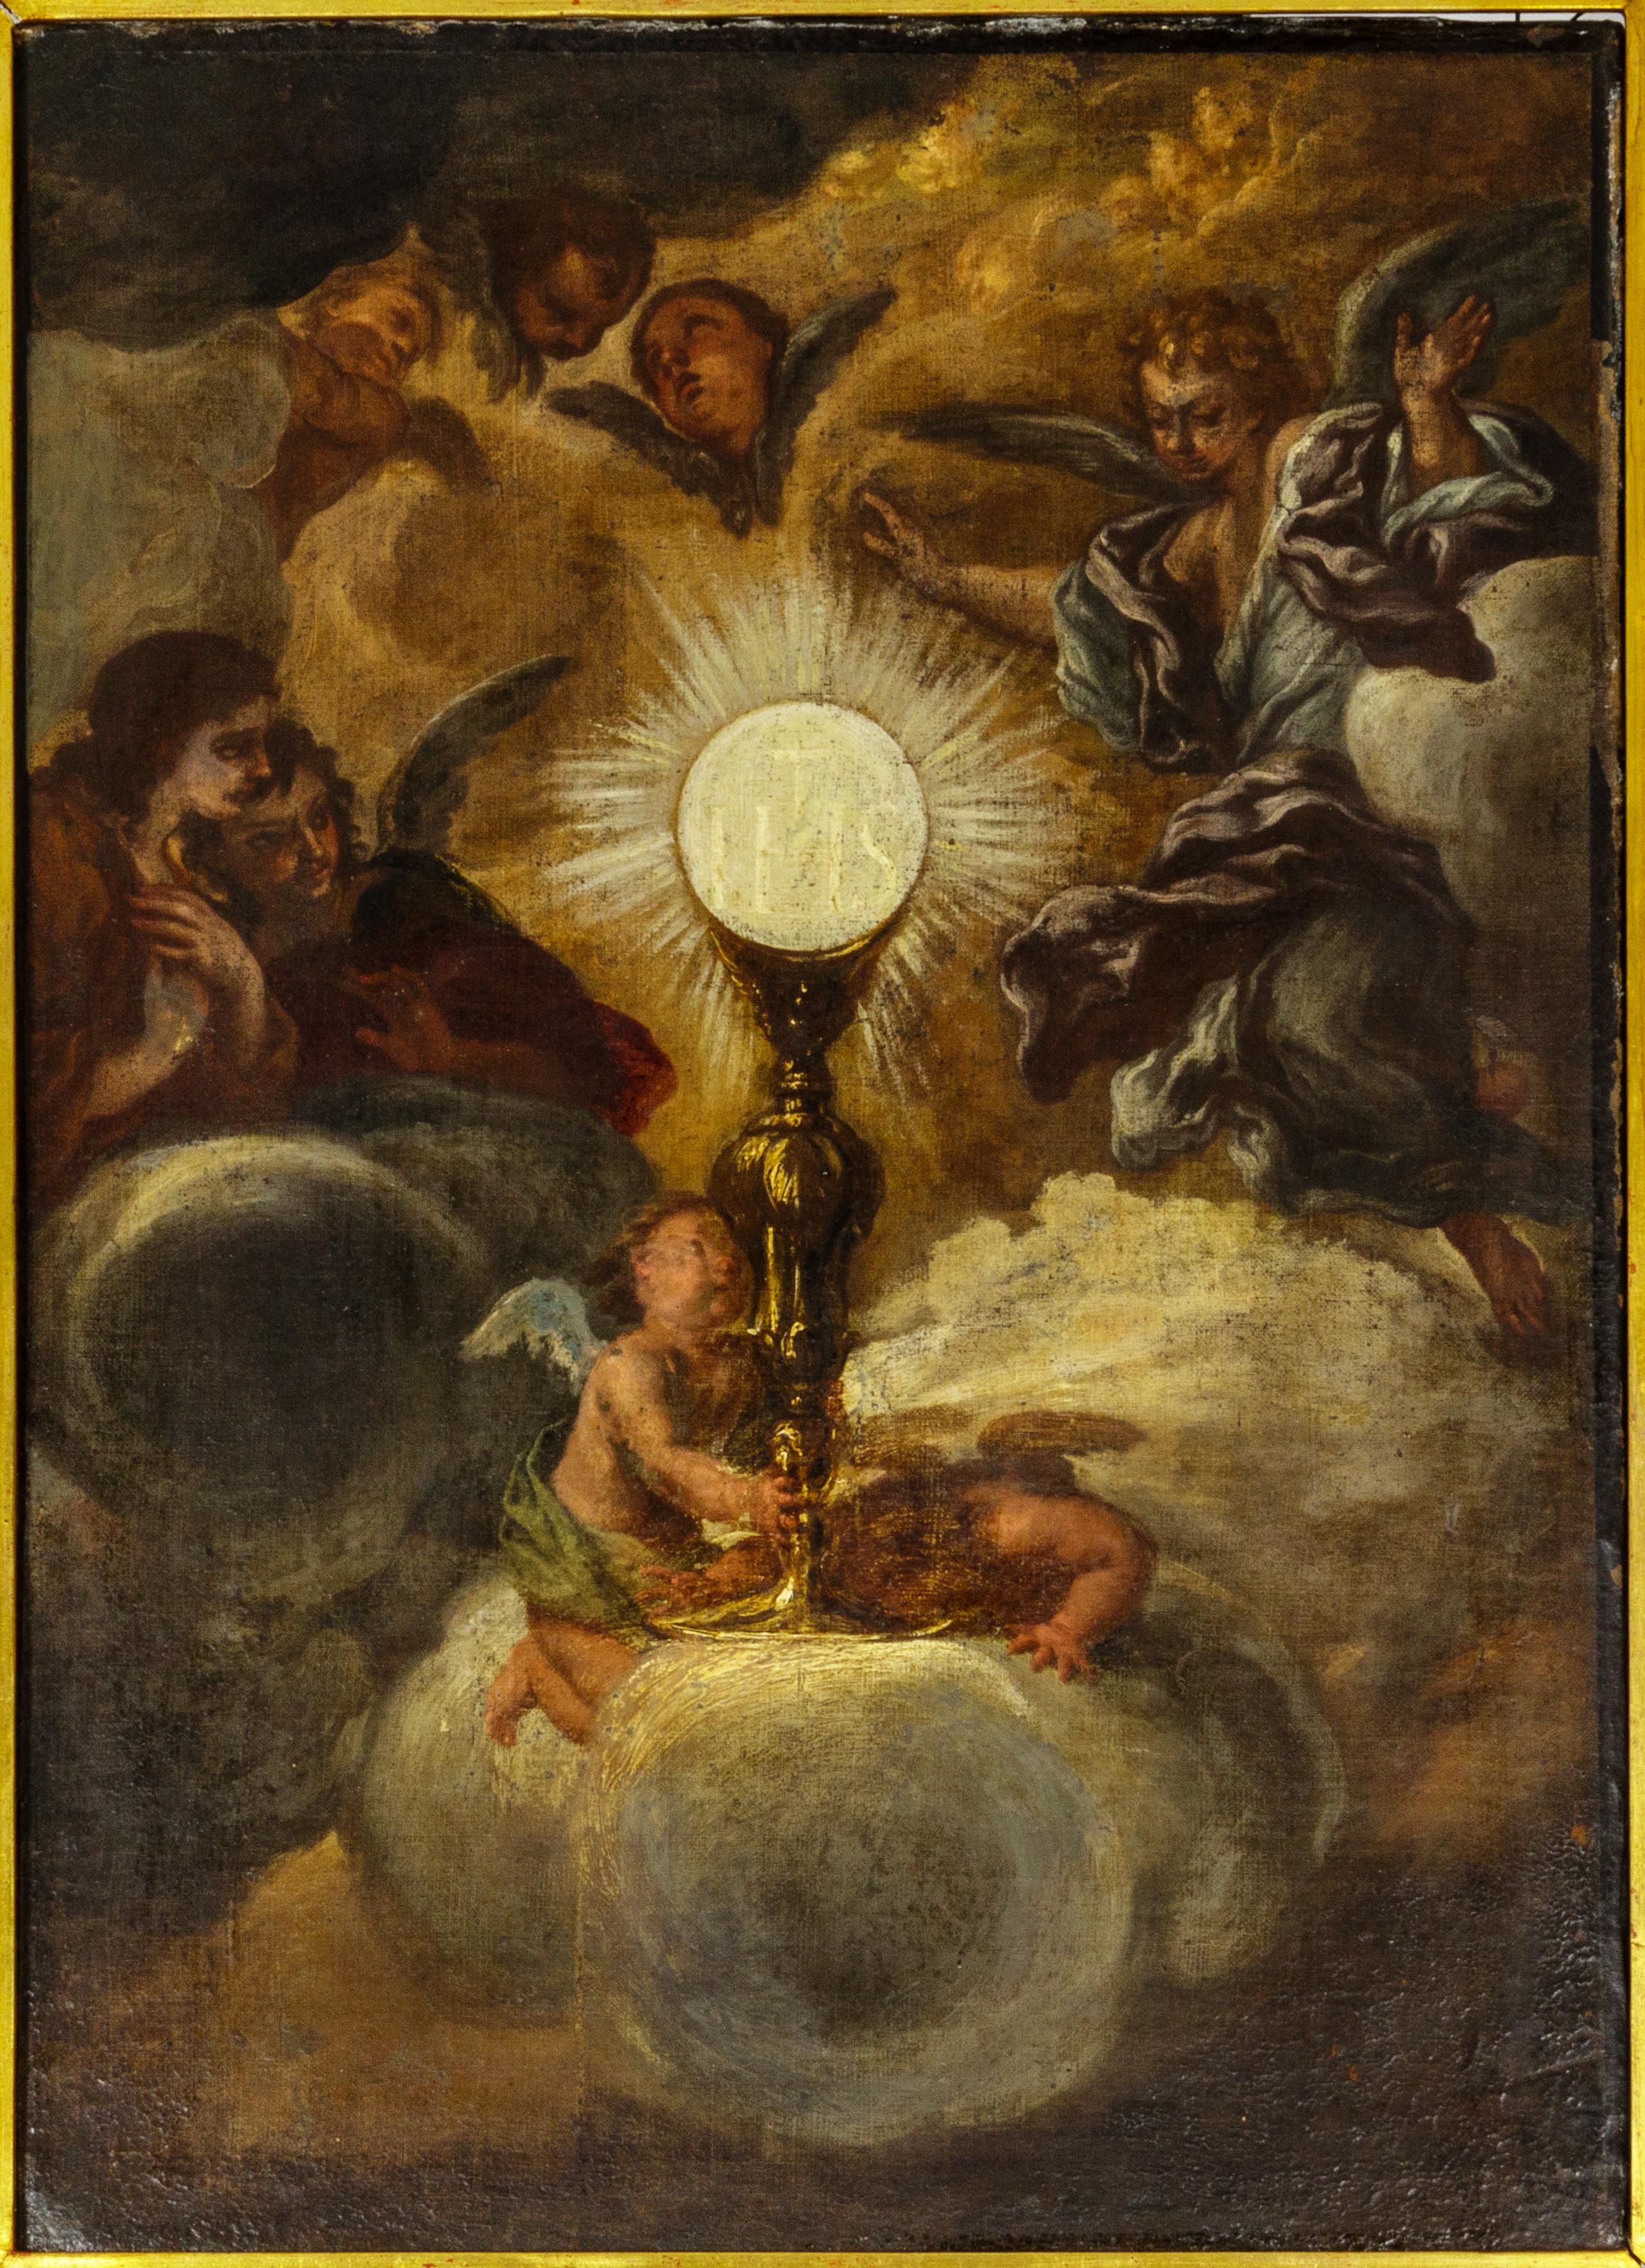 Peinture, antérieure à 1678, d'une célèbre fresque du Triomphe du nom de Jésus de l'église du Gesù à Rome, achevée en 1684, attribuée au vieux maître Giovanni Battista Gaulli, également connu sous le nom de Baciccio ou Baciccia, un maître italien du